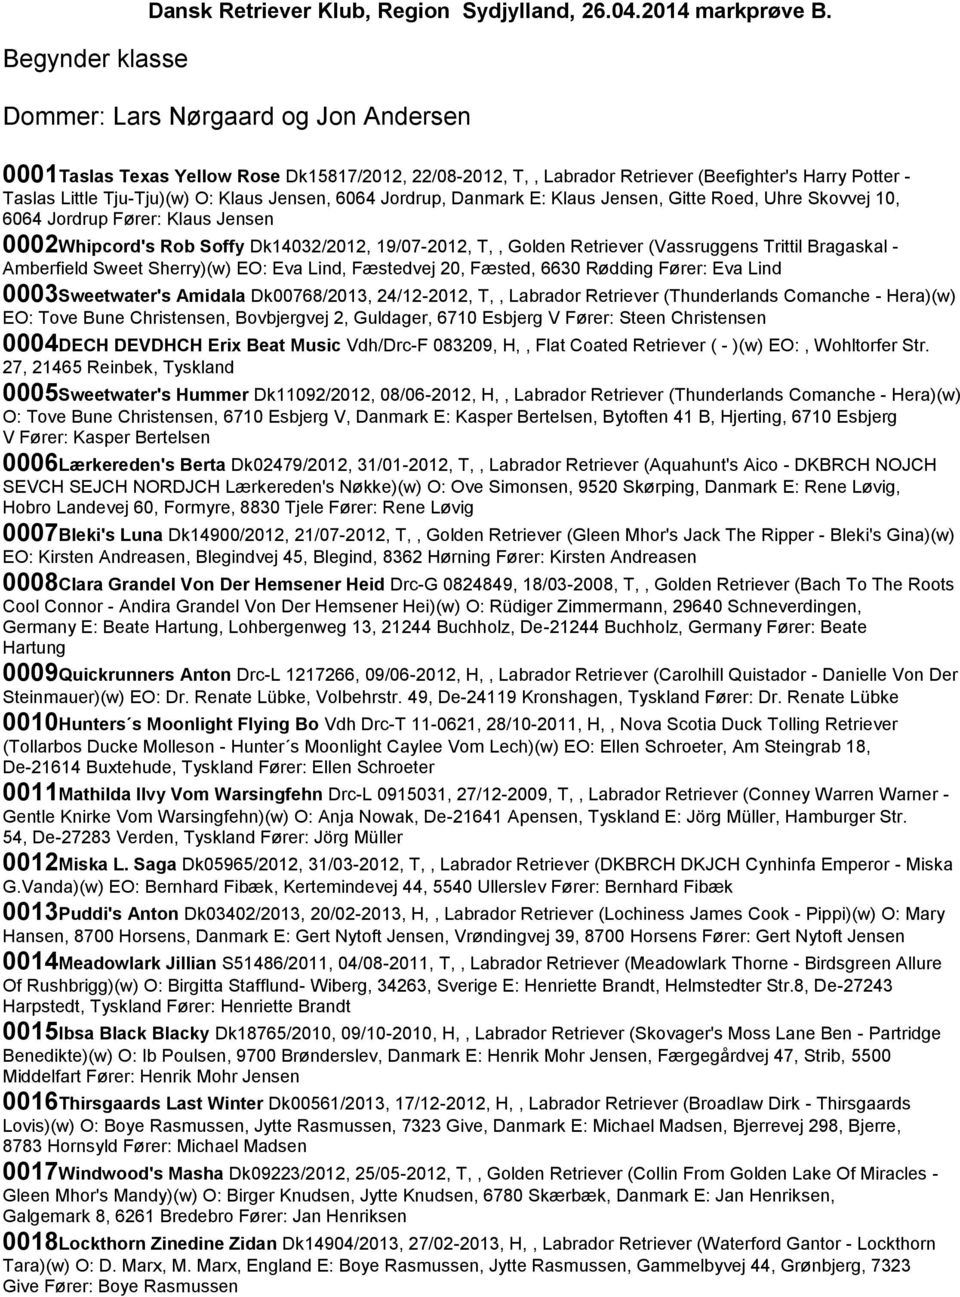 Jordrup, Danmark E: Klaus Jensen, Gitte Roed, Uhre Skovvej 10, 6064 Jordrup Fører: Klaus Jensen 0002Whipcord's Rob Soffy Dk14032/2012, 19/07-2012, T,, Golden Retriever (Vassruggens Trittil Bragaskal